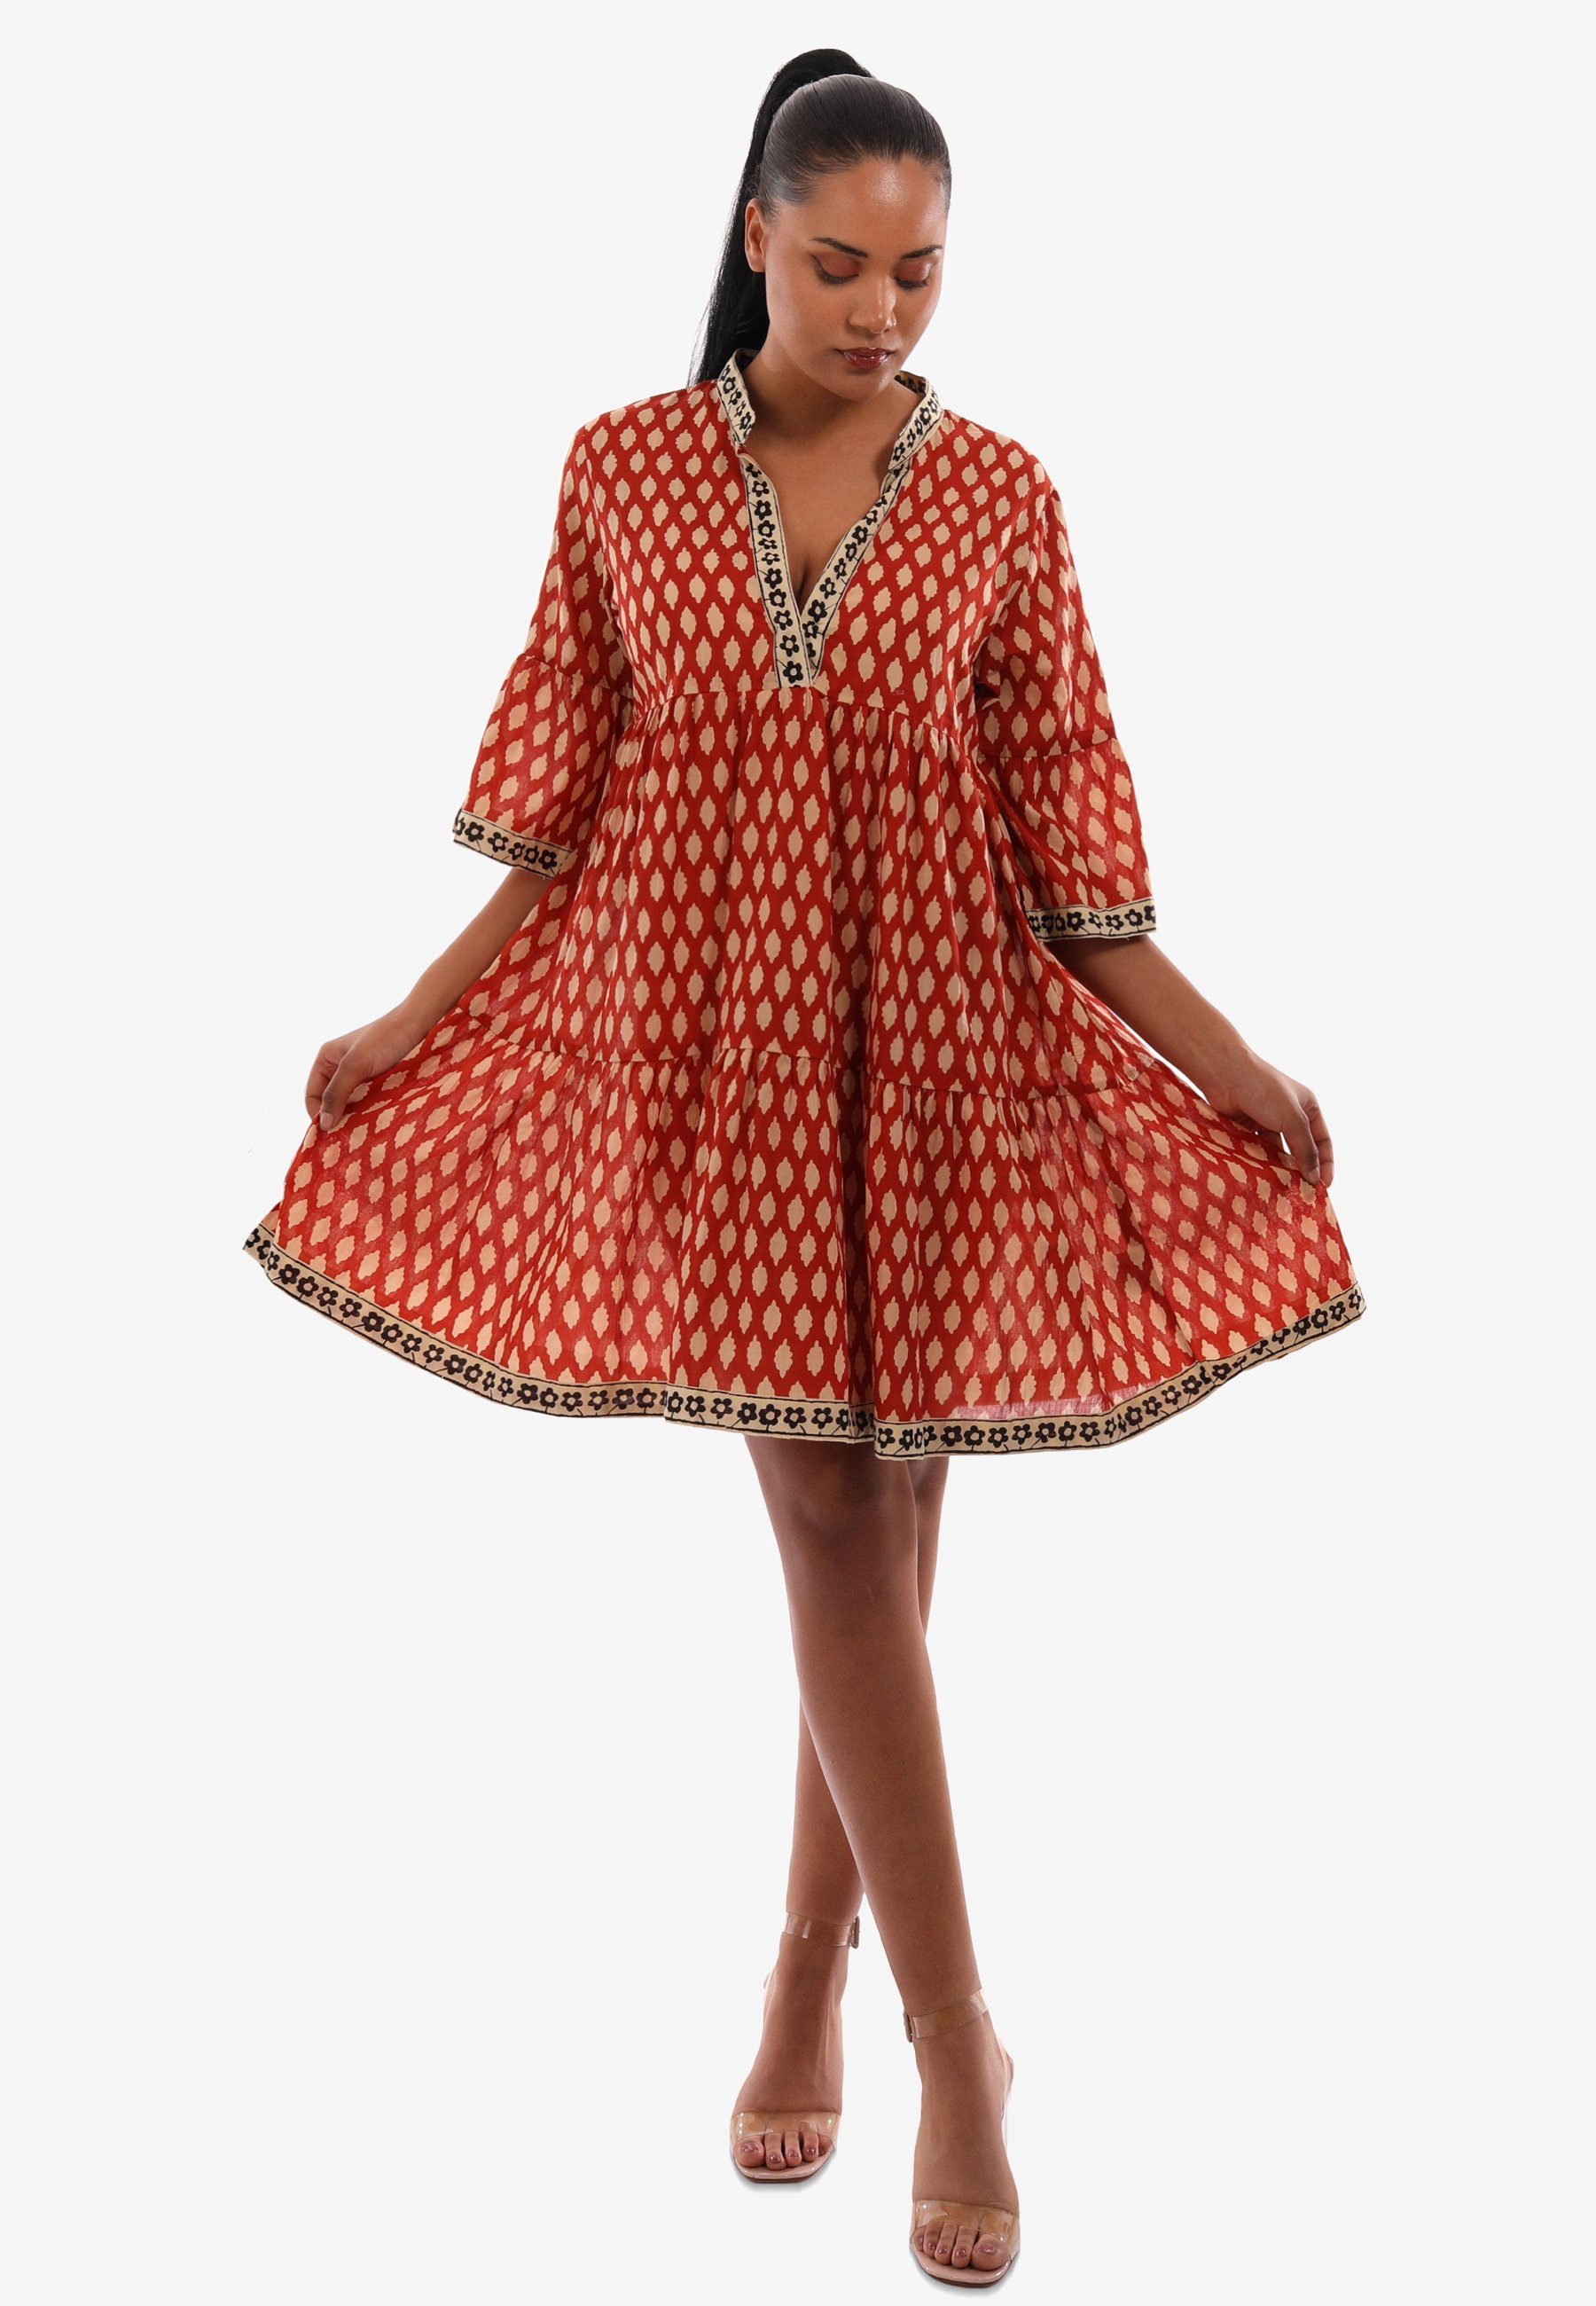 YC - & Kleid Bequem Tunikakleid Boho und Tunika Style Alloverdruck Fashion Oversized mit Lässig